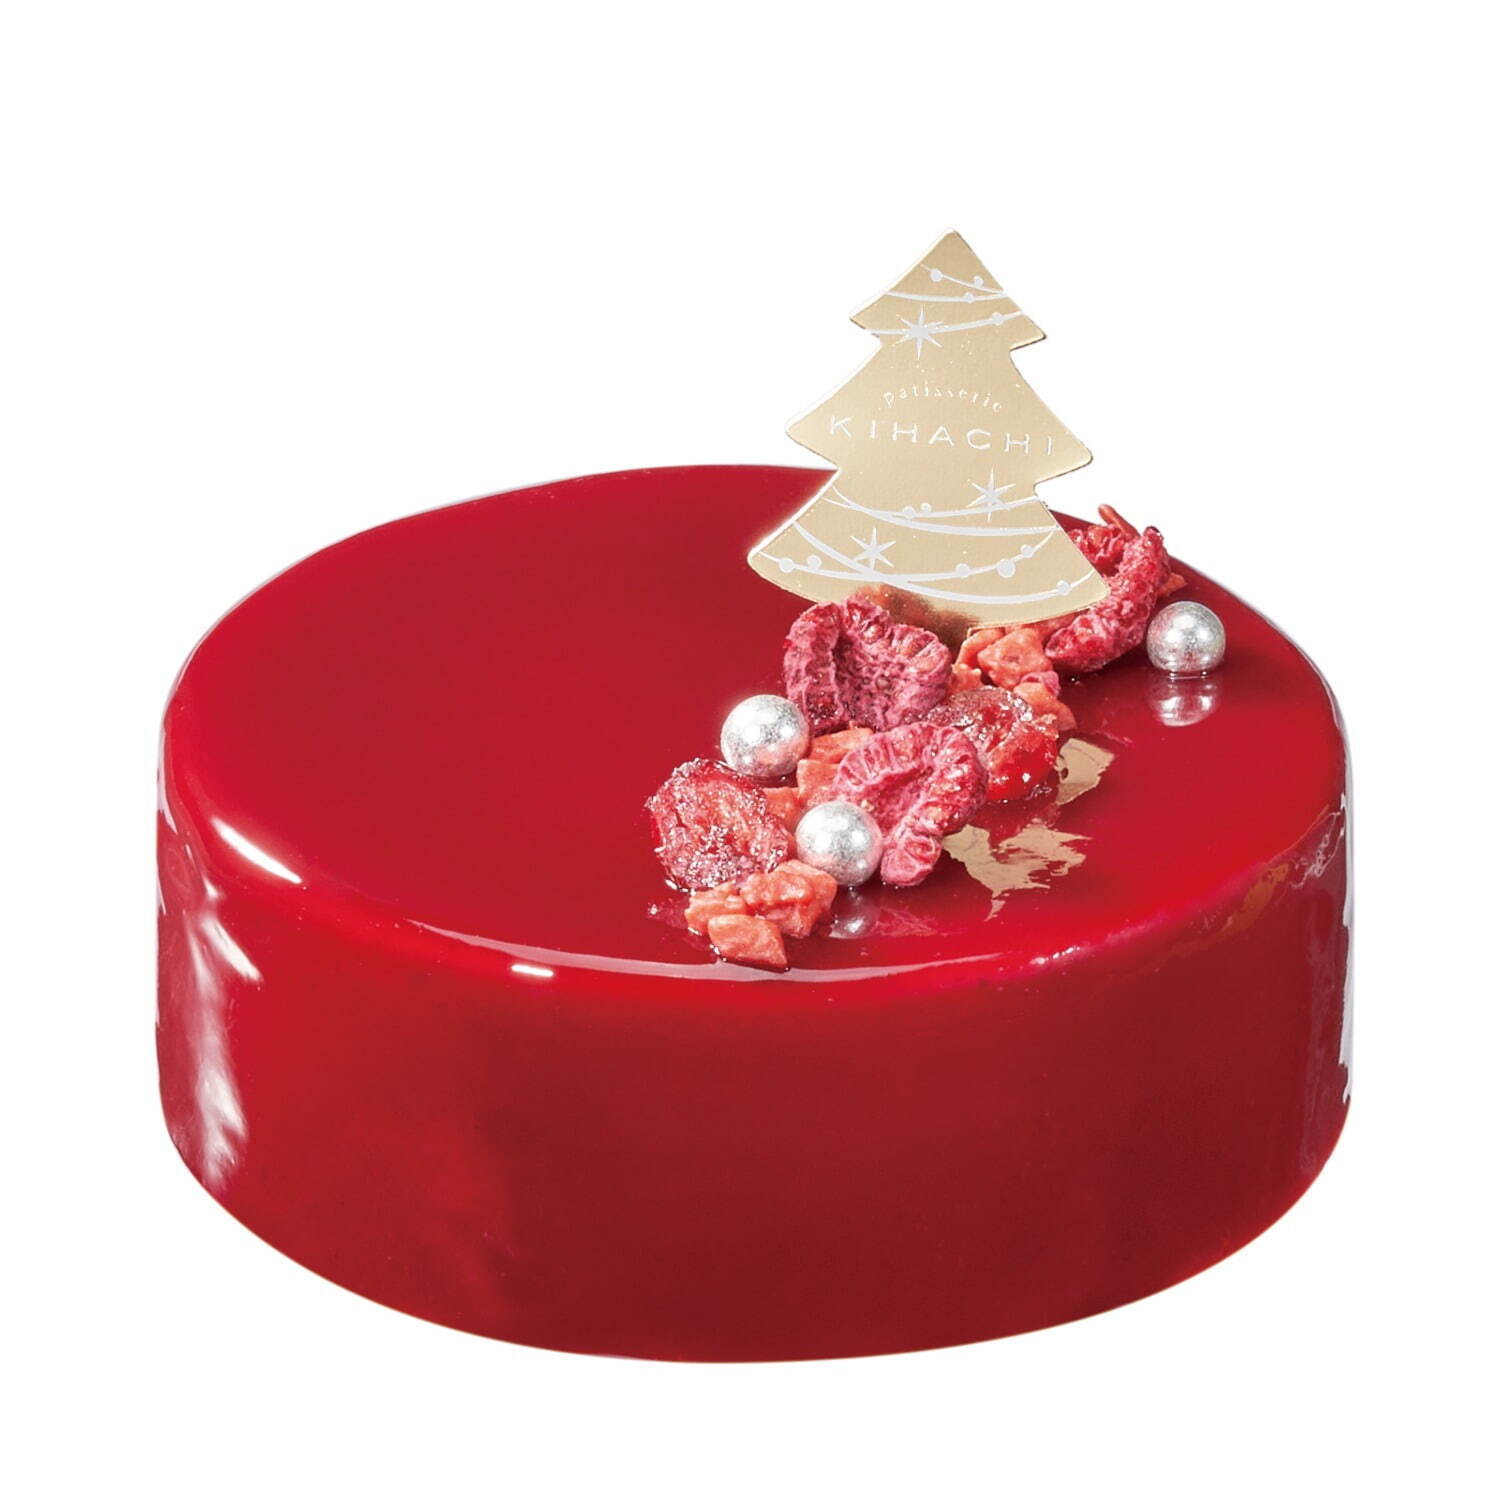 パティスリー キハチのクリスマスケーキ2021、“ベリー尽くし”の真っ赤なケーキなど｜写真5